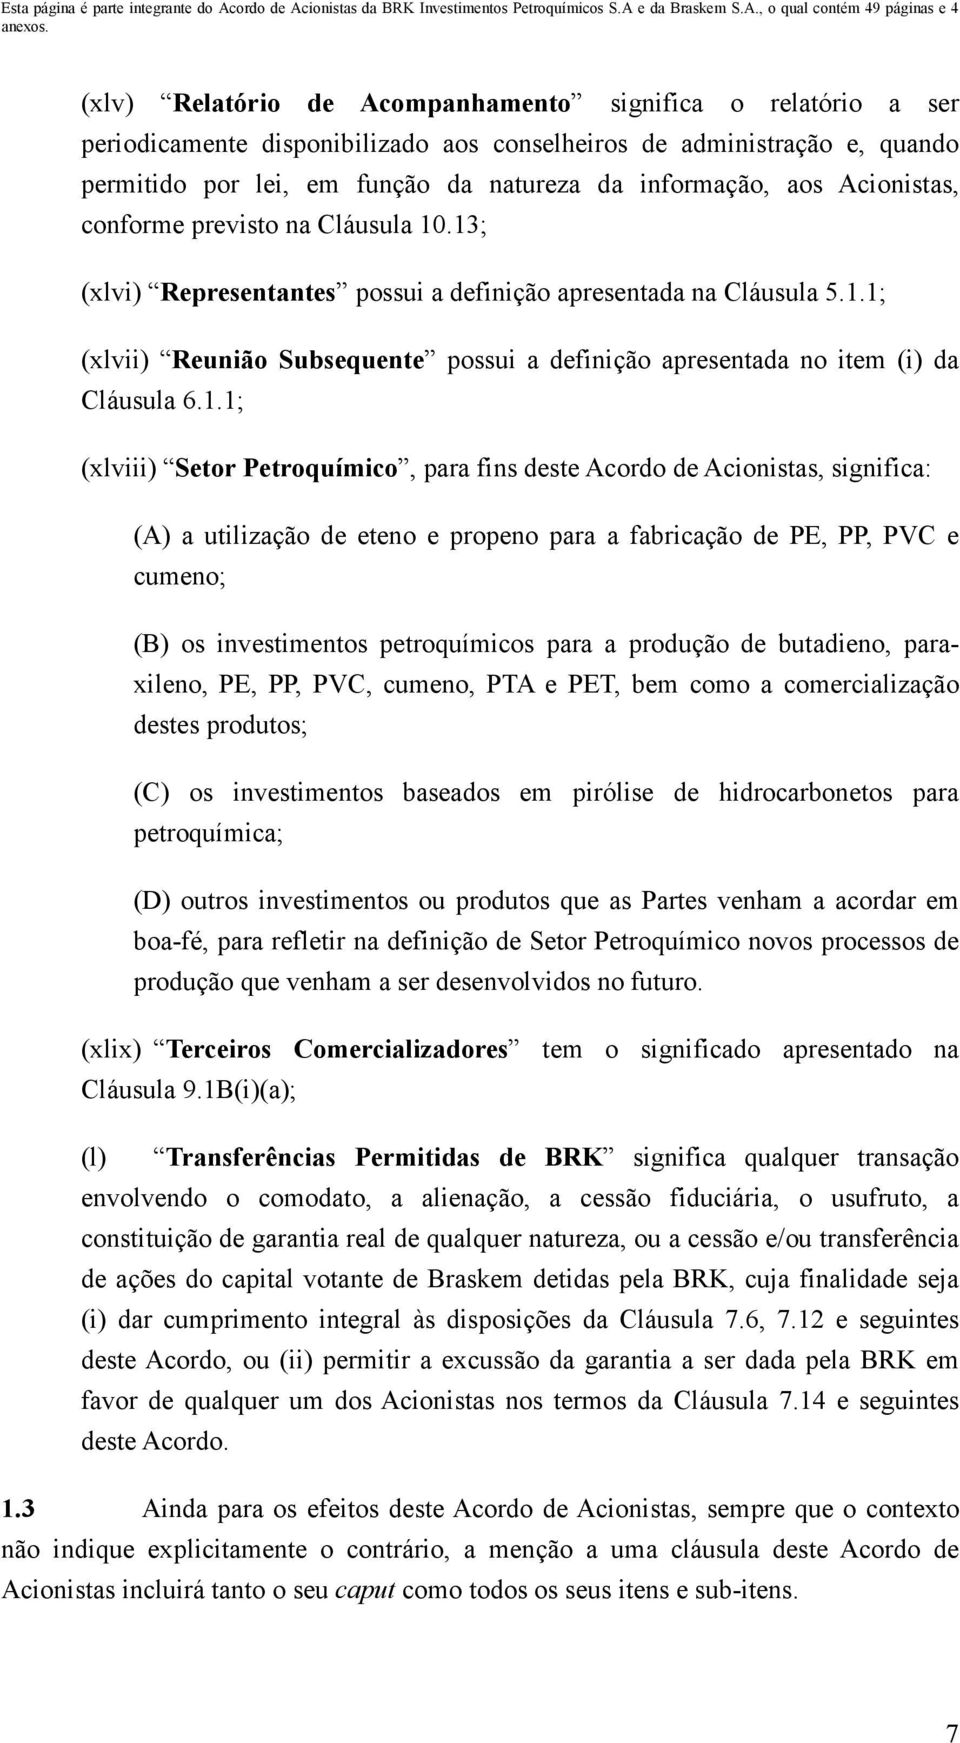 1.1; (xlviii) Setor Petroquímico, para fins deste Acordo de Acionistas, significa: (A) a utilização de eteno e propeno para a fabricação de PE, PP, PVC e cumeno; (B) os investimentos petroquímicos